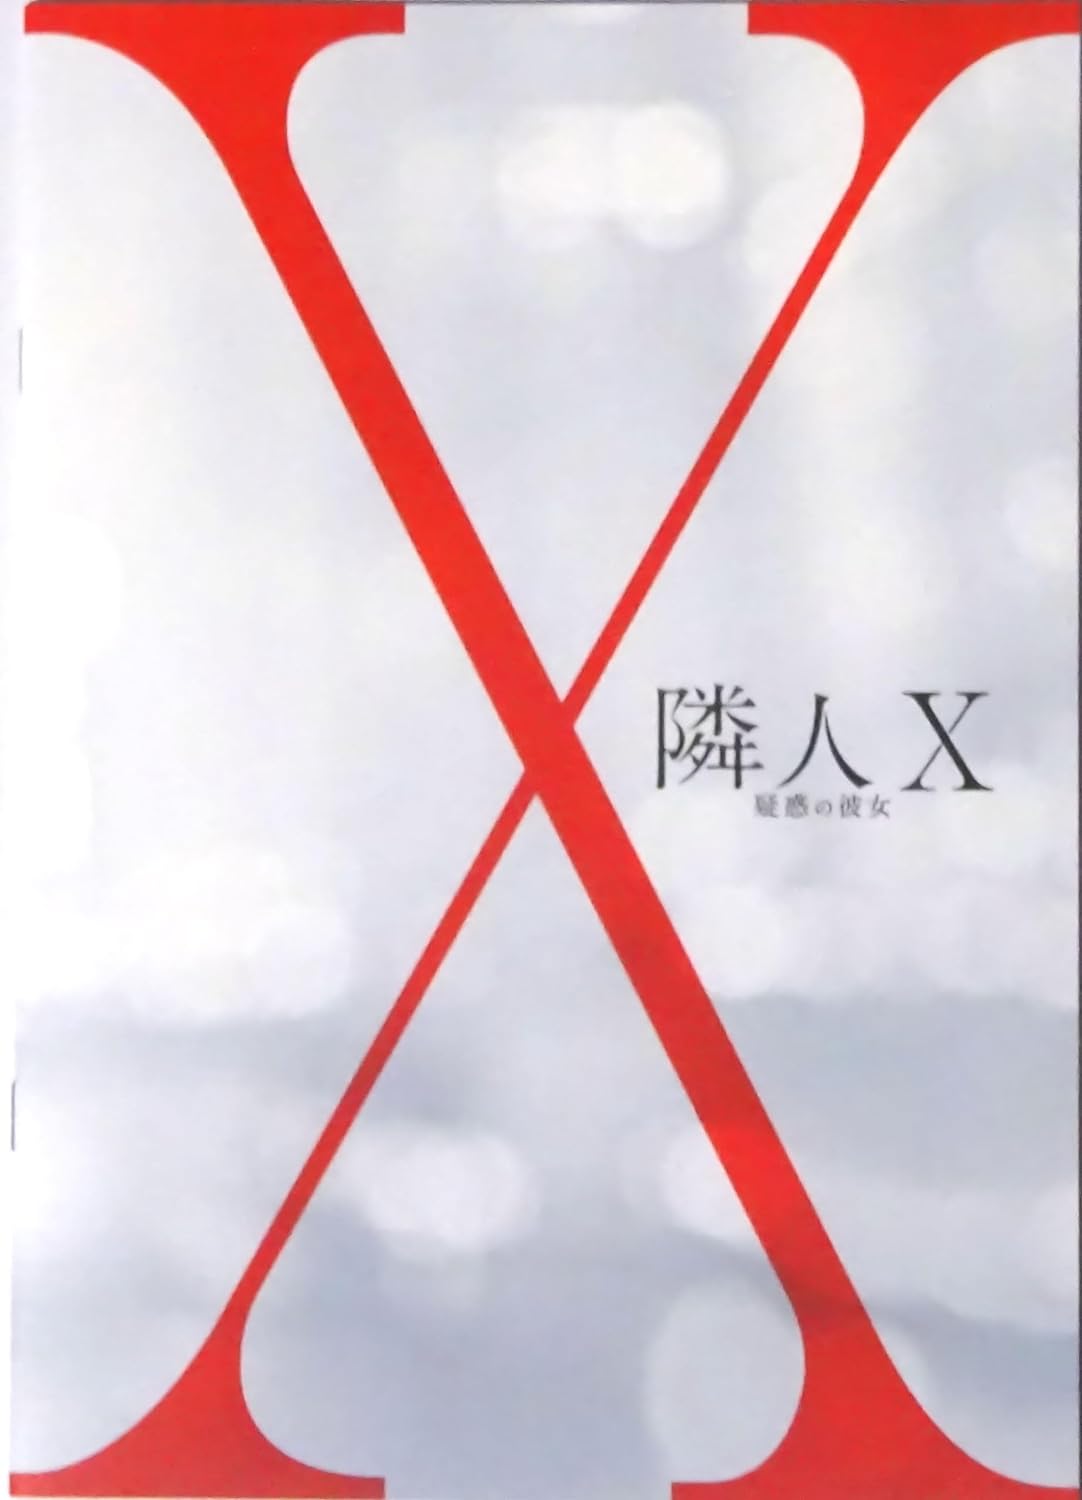 【映画パンフレット】 『隣人X -疑惑の彼女-』 出演:上野樹里.林遣都.野村周平